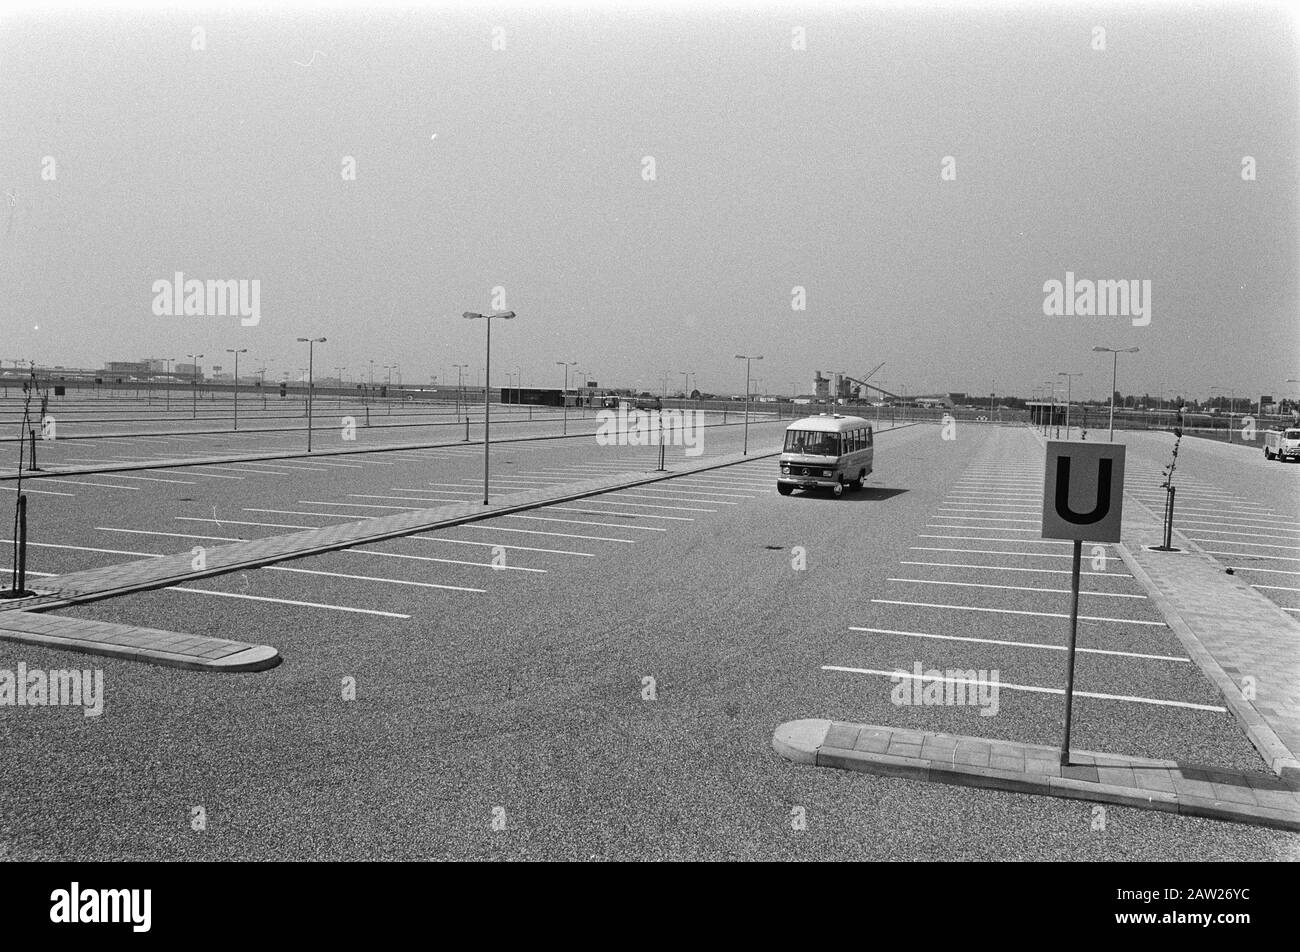 Stationnement pour stationnement à long terme à l'aéroport Date : le 14 juin 1974 mots clés : parkings, aéroports Banque D'Images